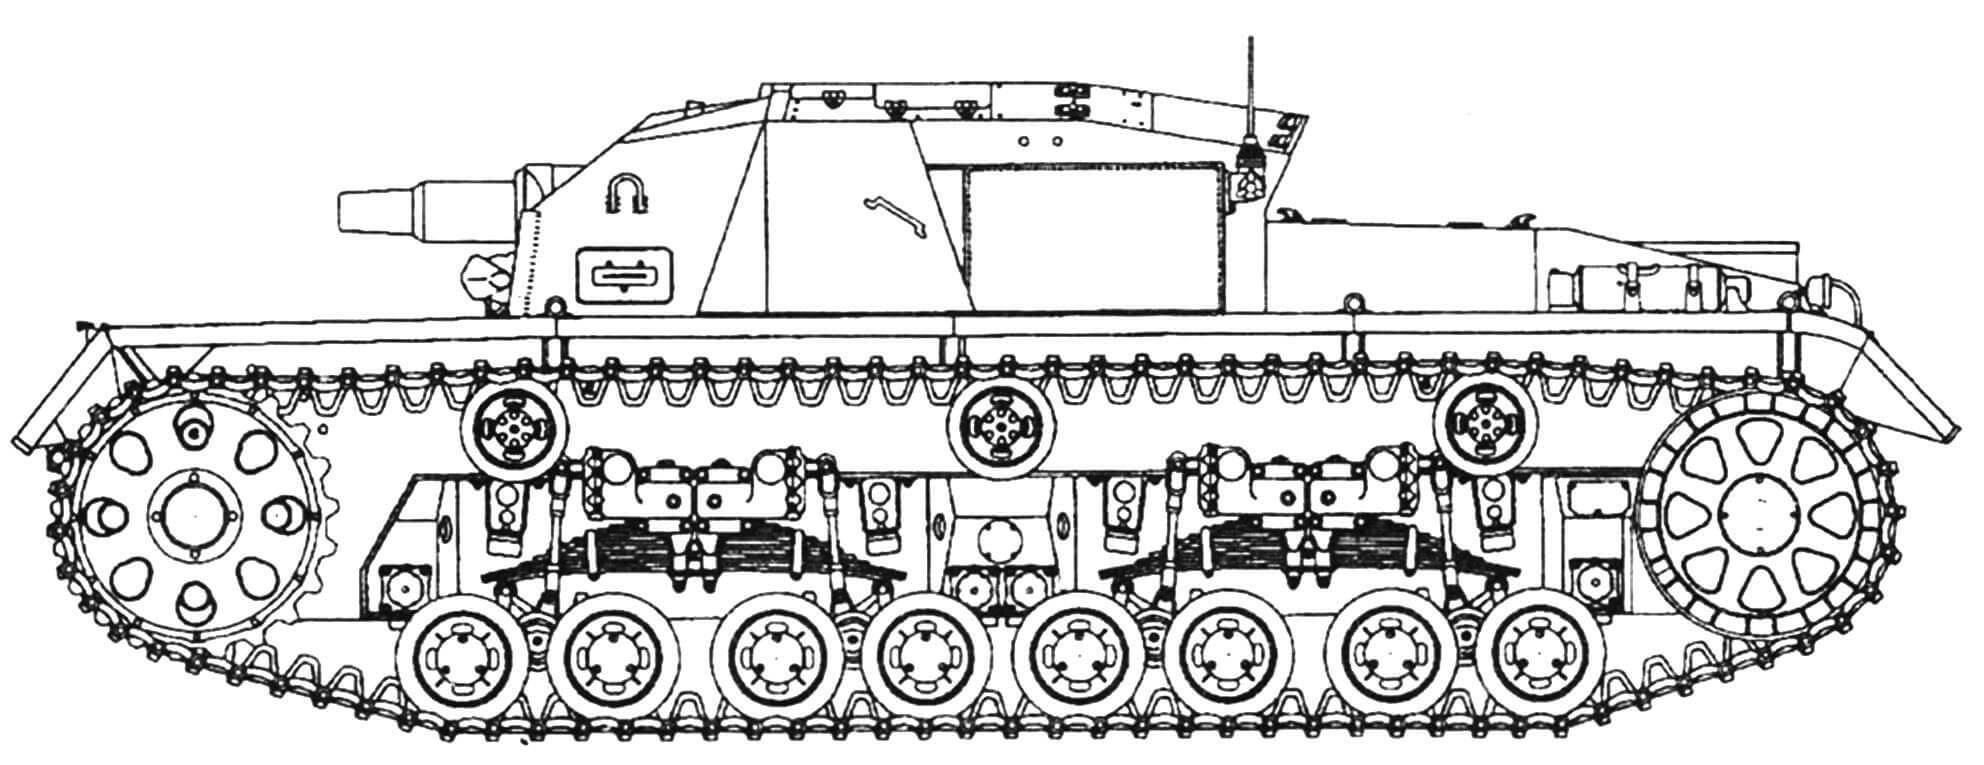 StuG III (нулевая серия)